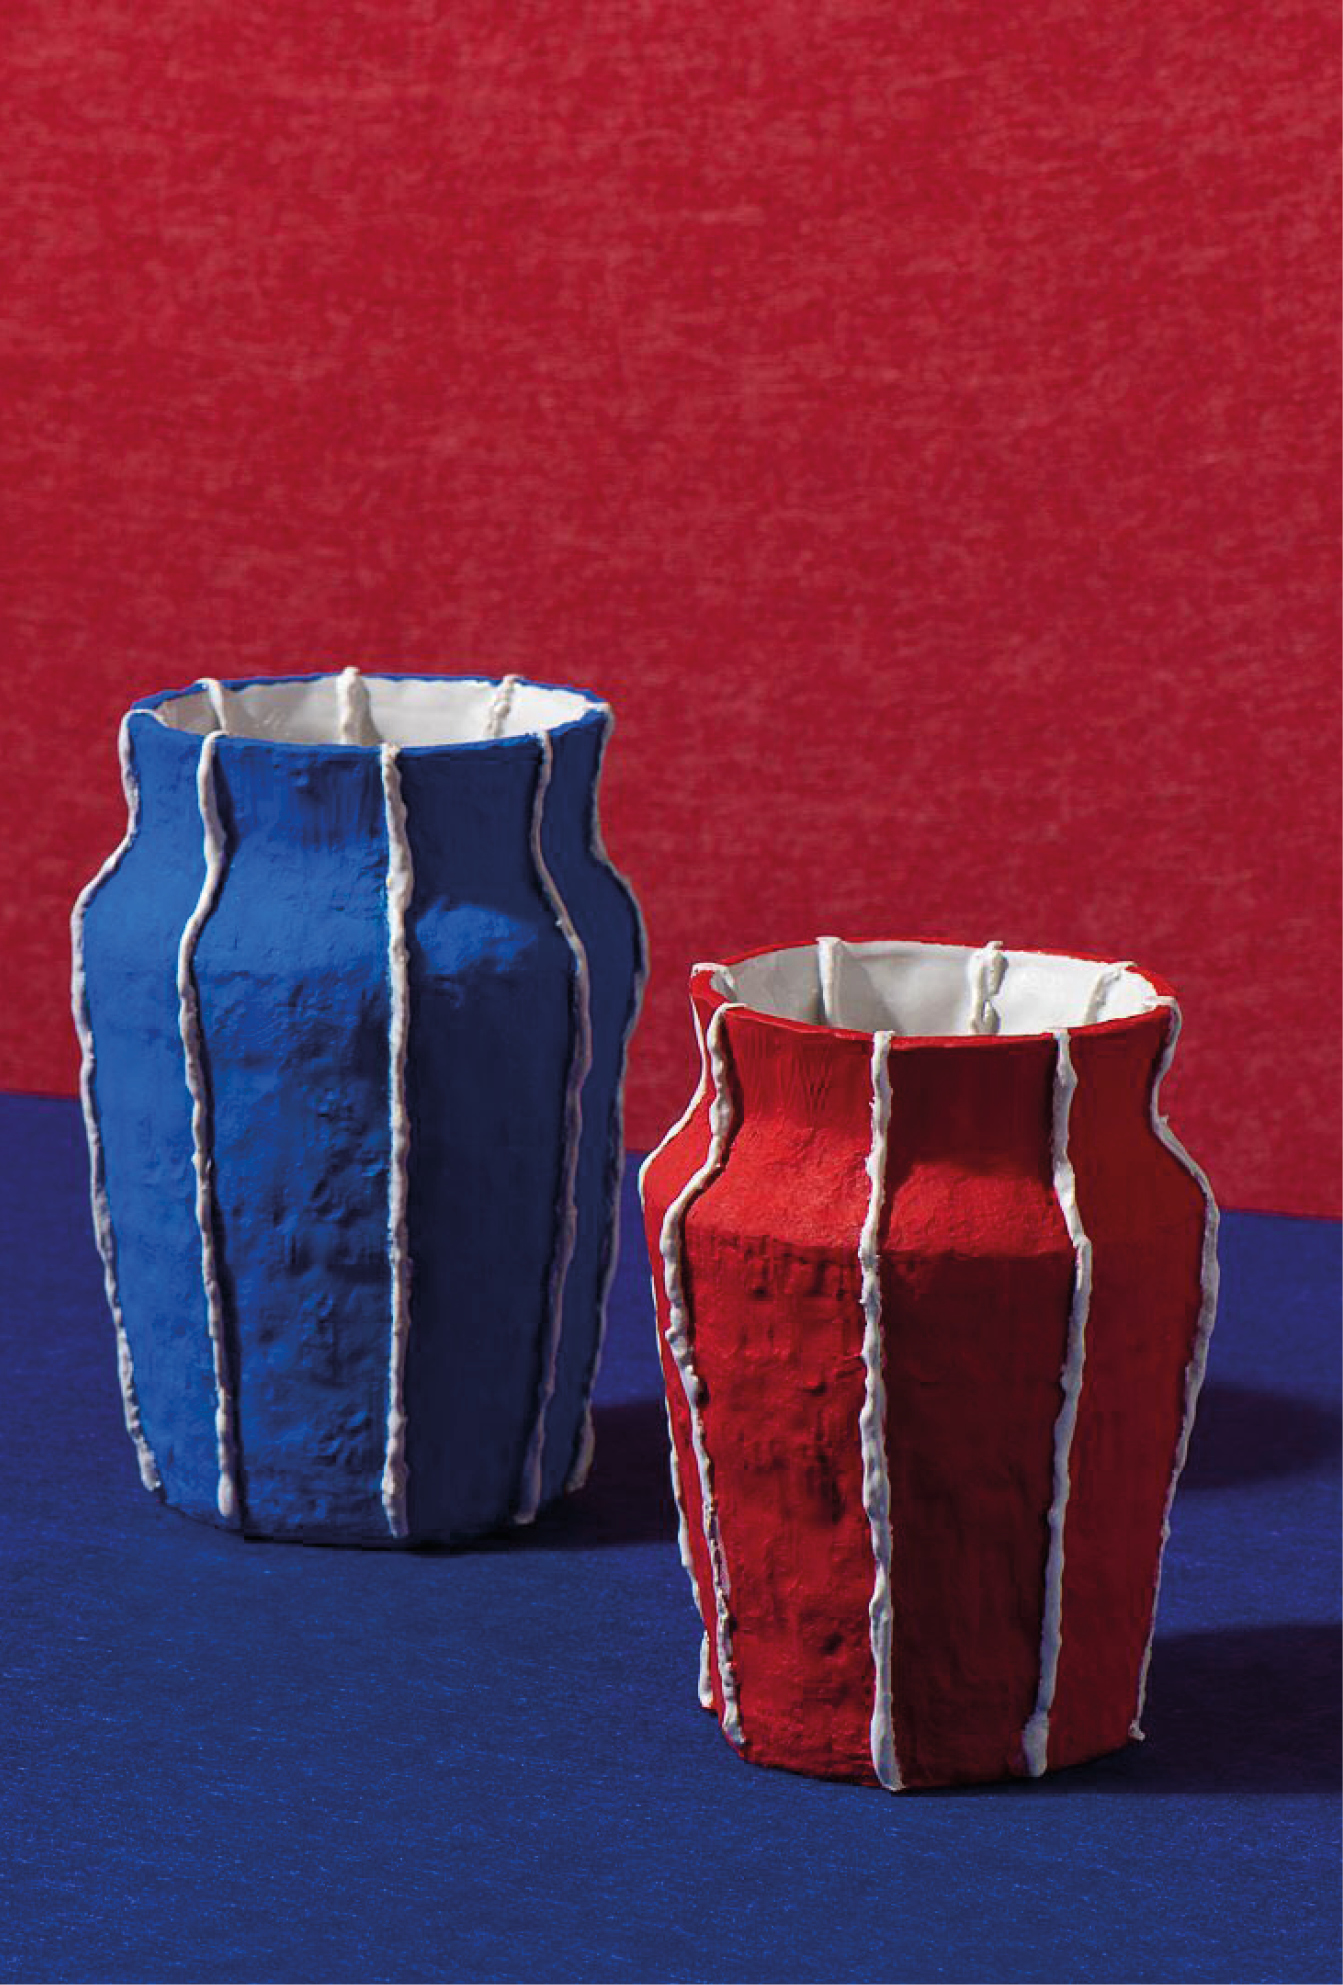 céramiques Lucy Tolan vases rouges et bleu